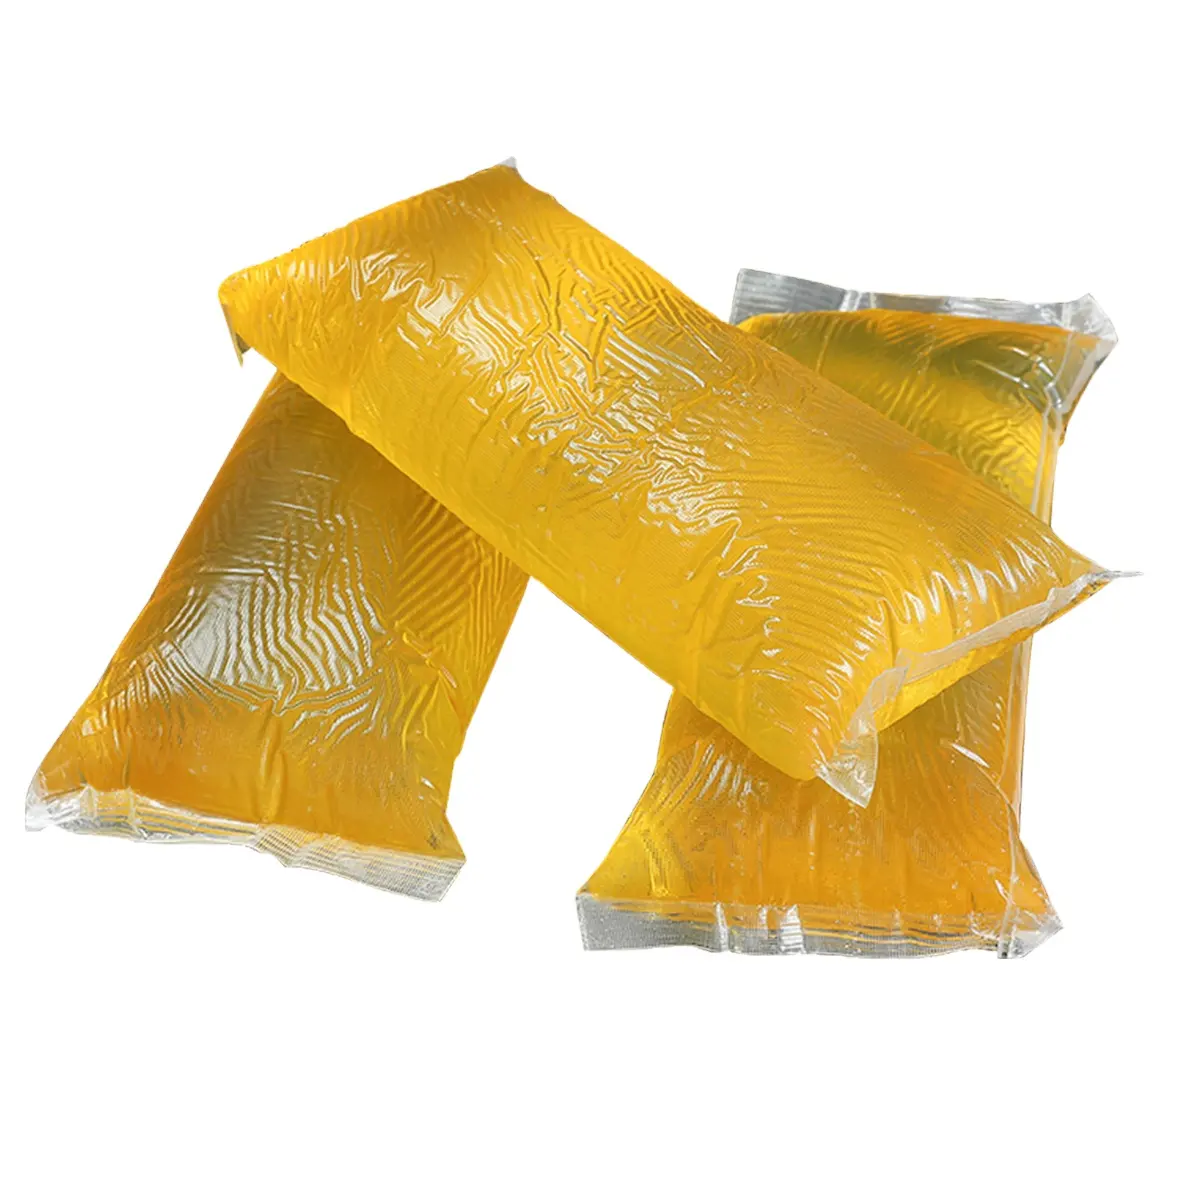 Pegamento de gelatina amarilla translúcida de fábrica, bloque de pegamento de fusión en caliente para Borde de muebles, Cajas de Regalo, productos de papel, sellado de plásticos